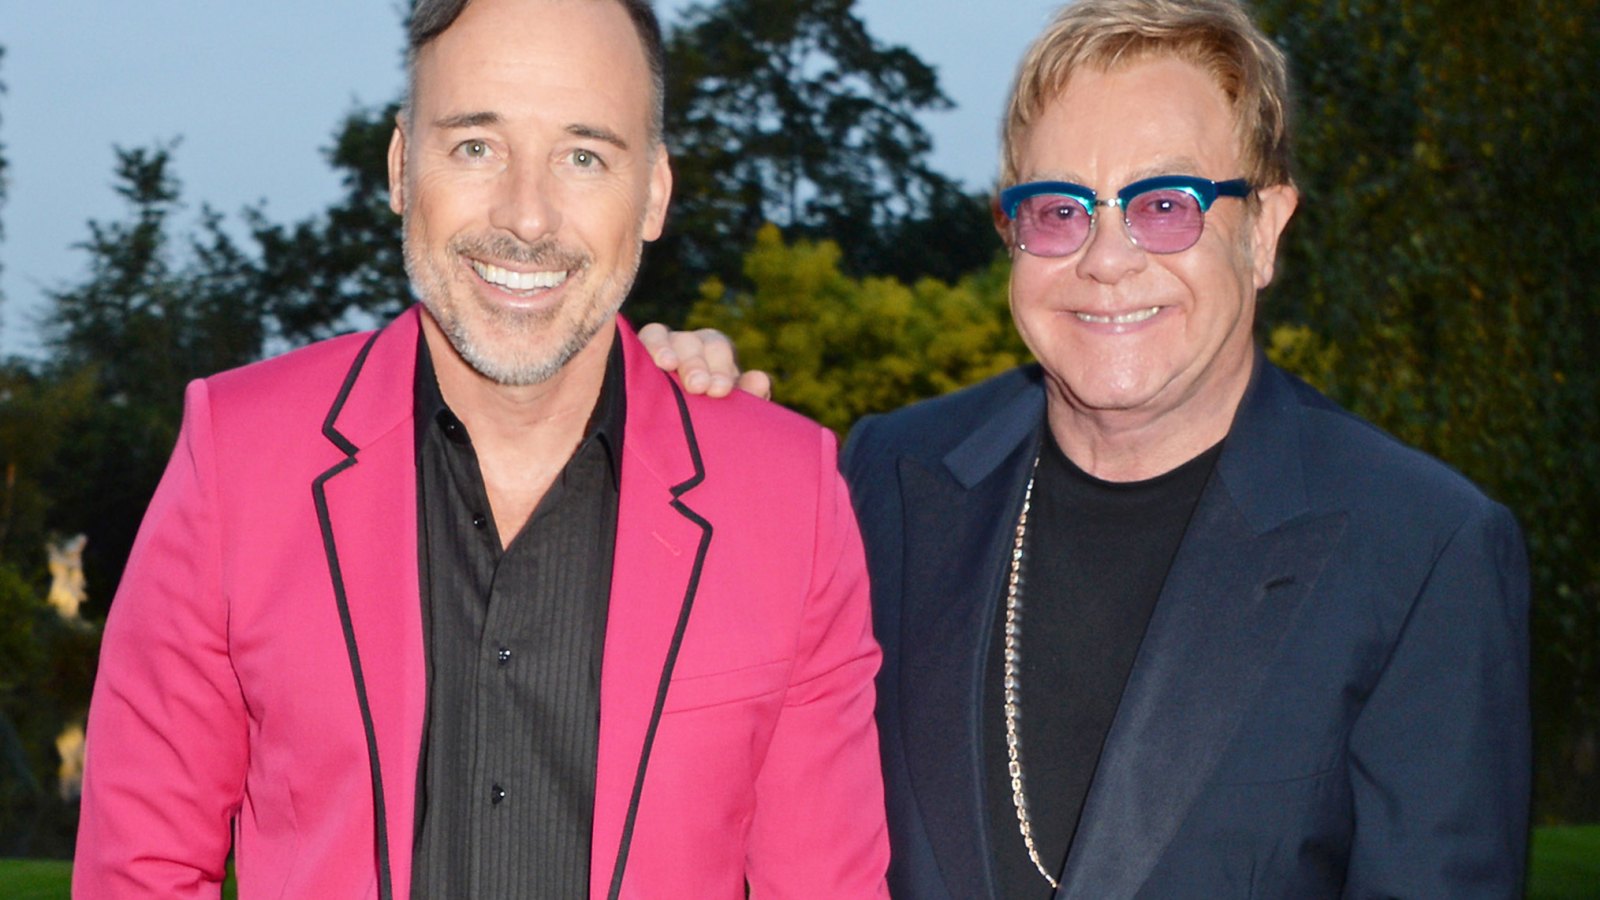 Elton John and David Furnish